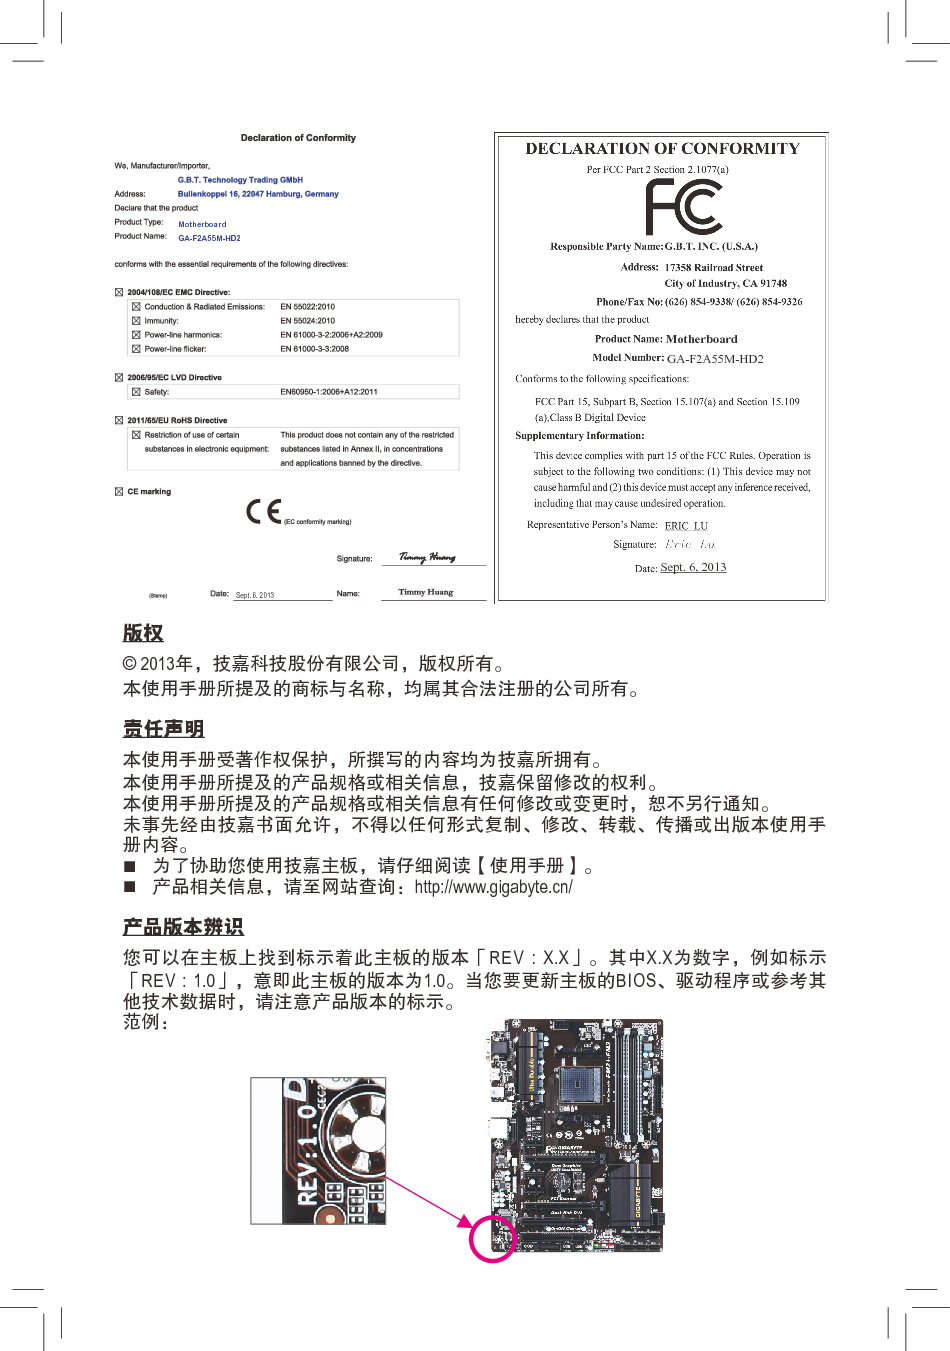 技嘉 Gigabyte GA-F2A55M-HD2 3001版 使用说明书 第1页